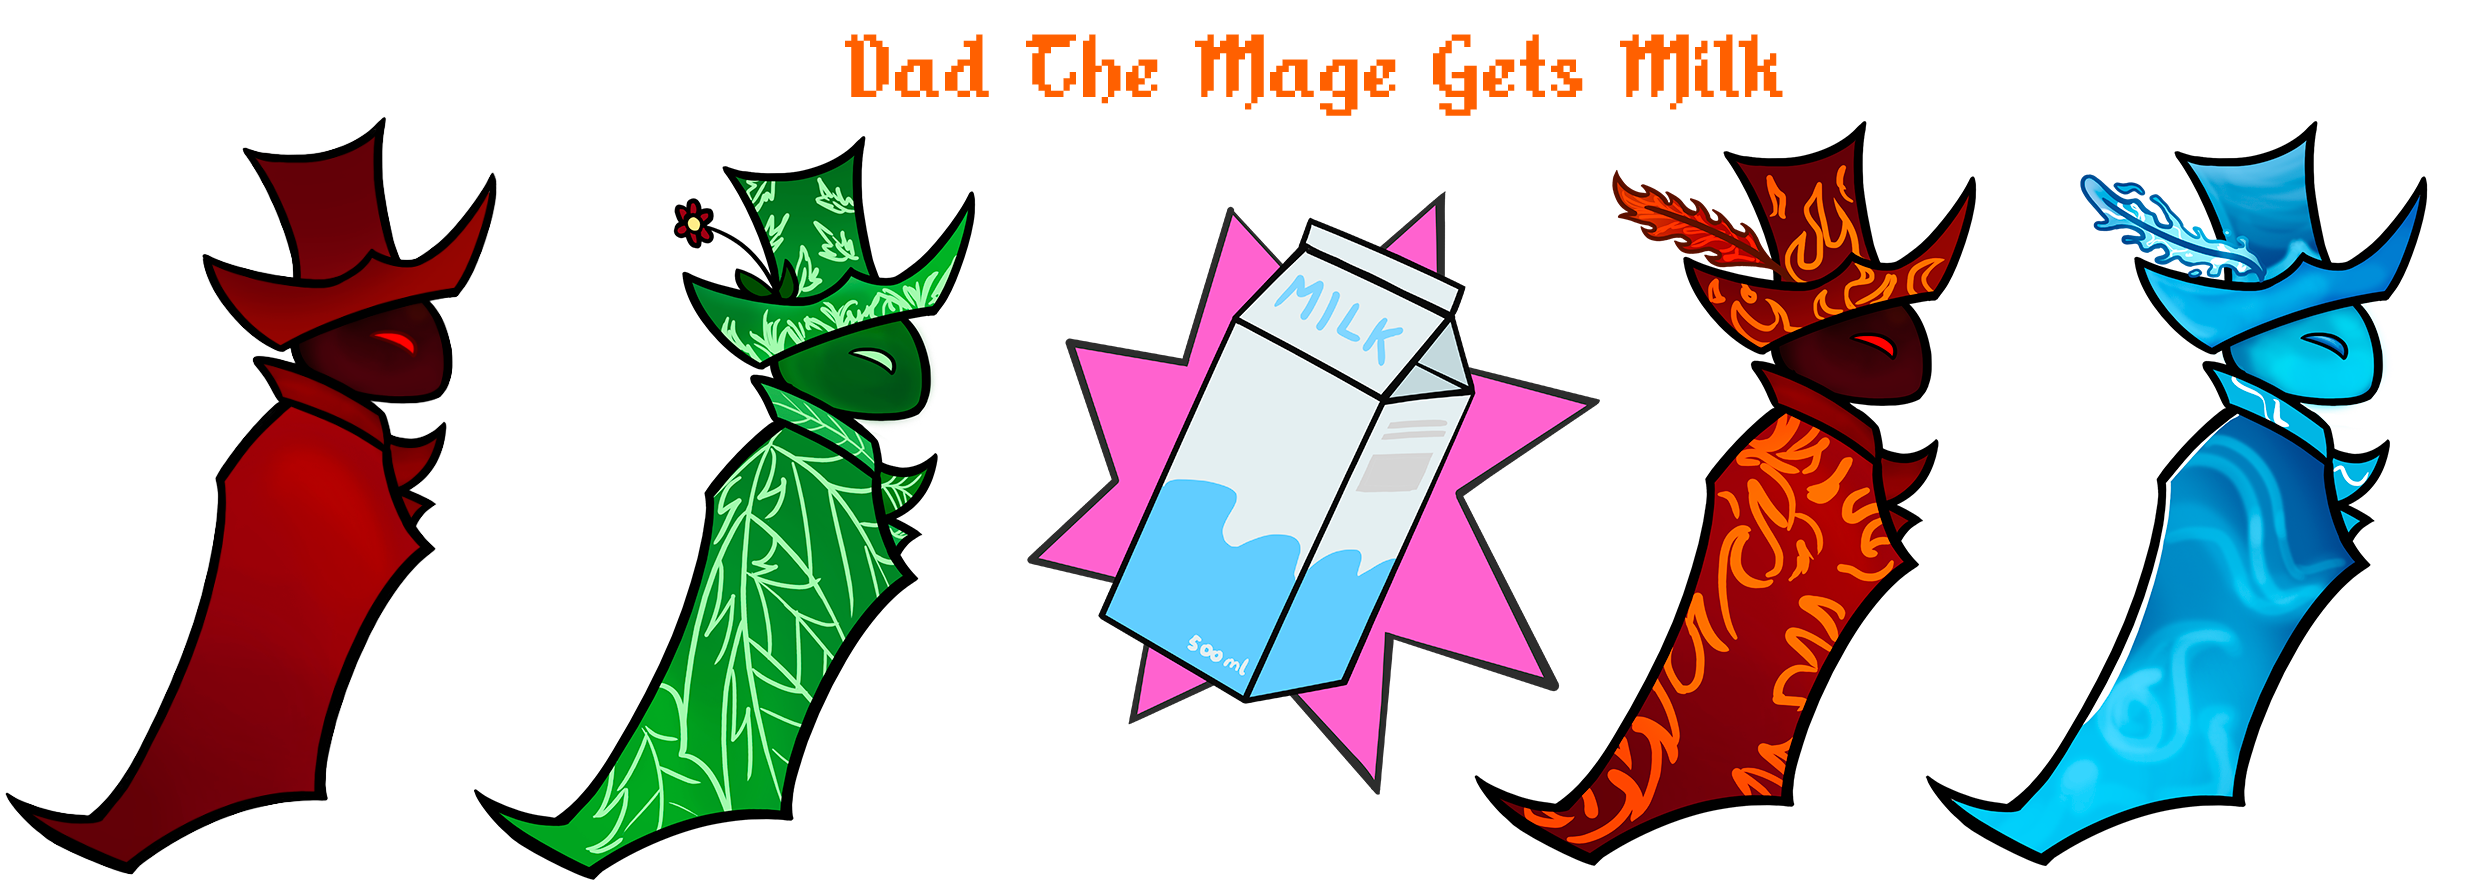 Dad the Mage gets milk